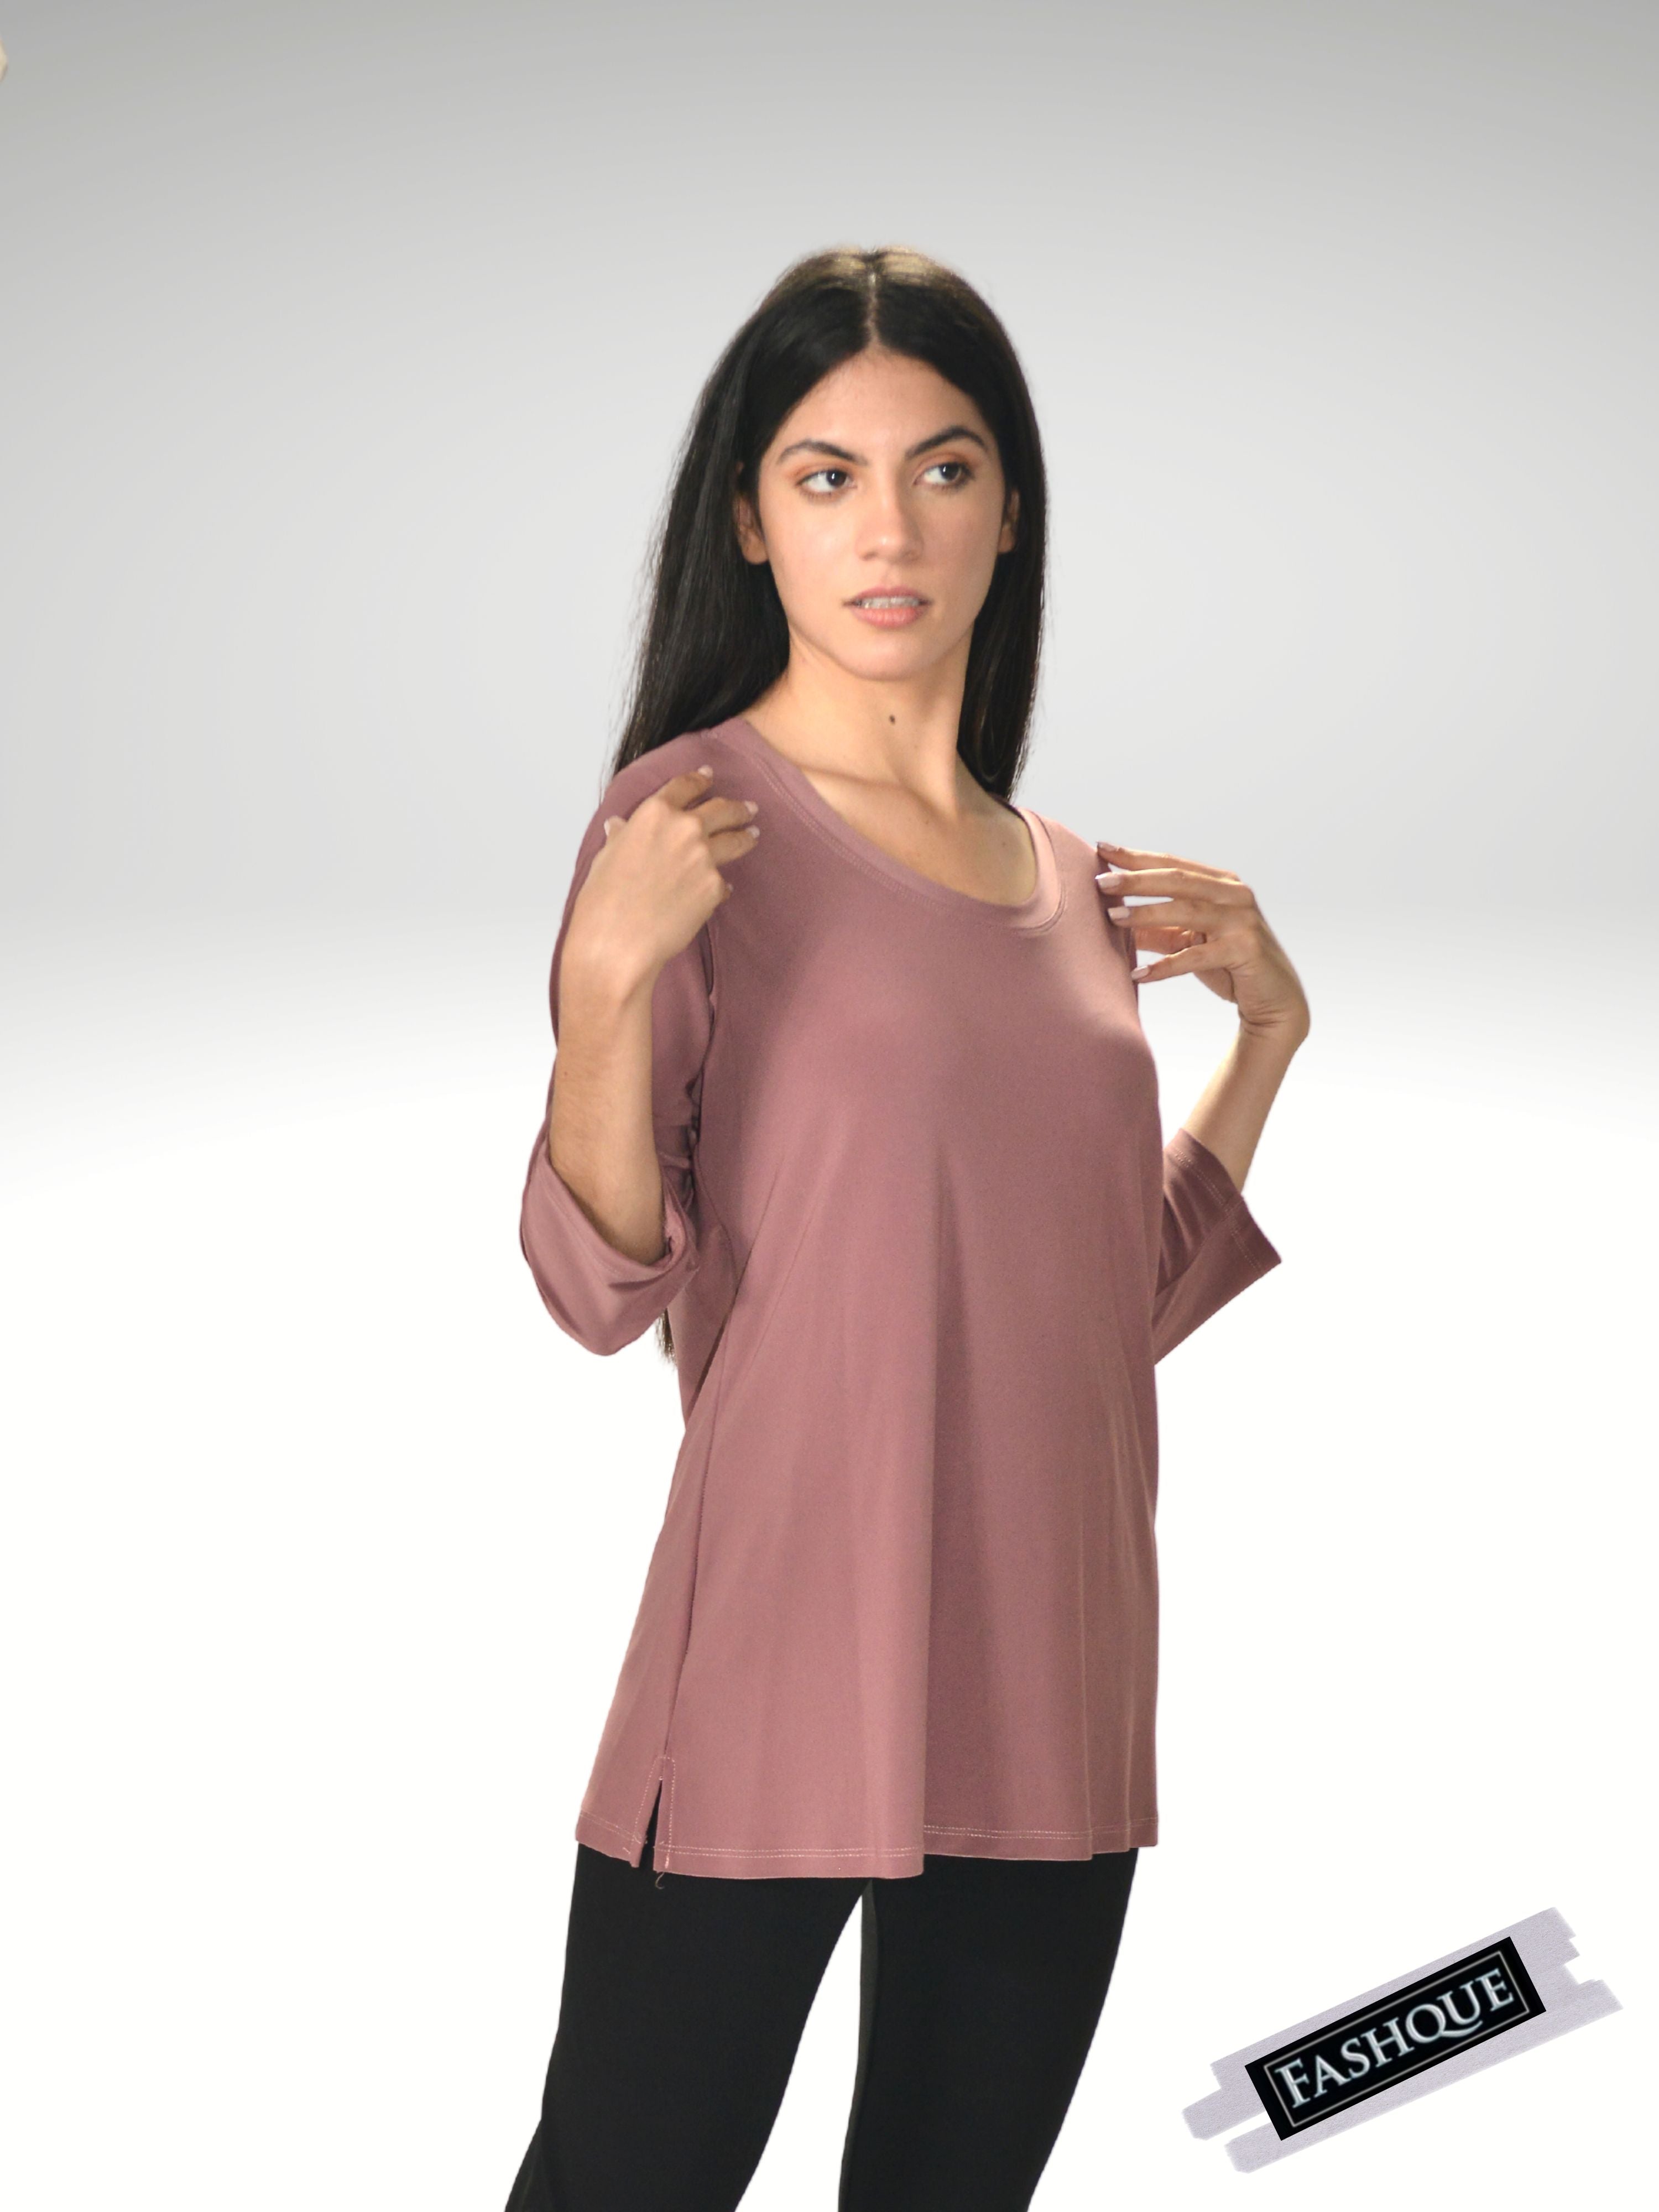 FASHQUE - Elegant 3/4-Sleeve Shirt - T311